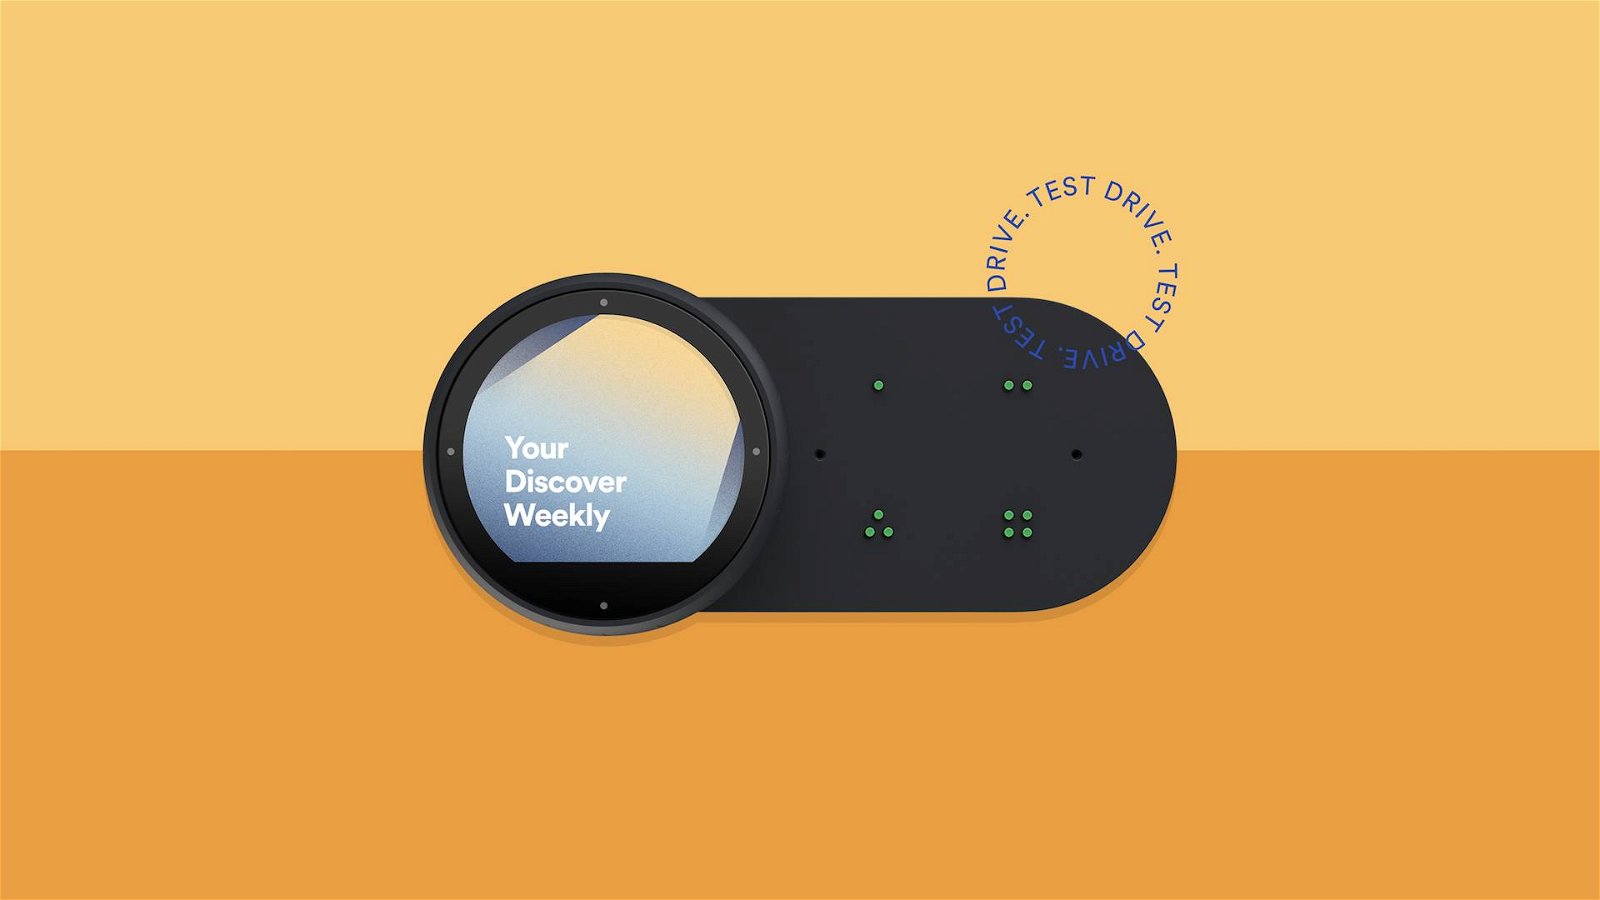 Immagine di Spotify Car Thing, un gadget per conoscere le abitudini degli utenti